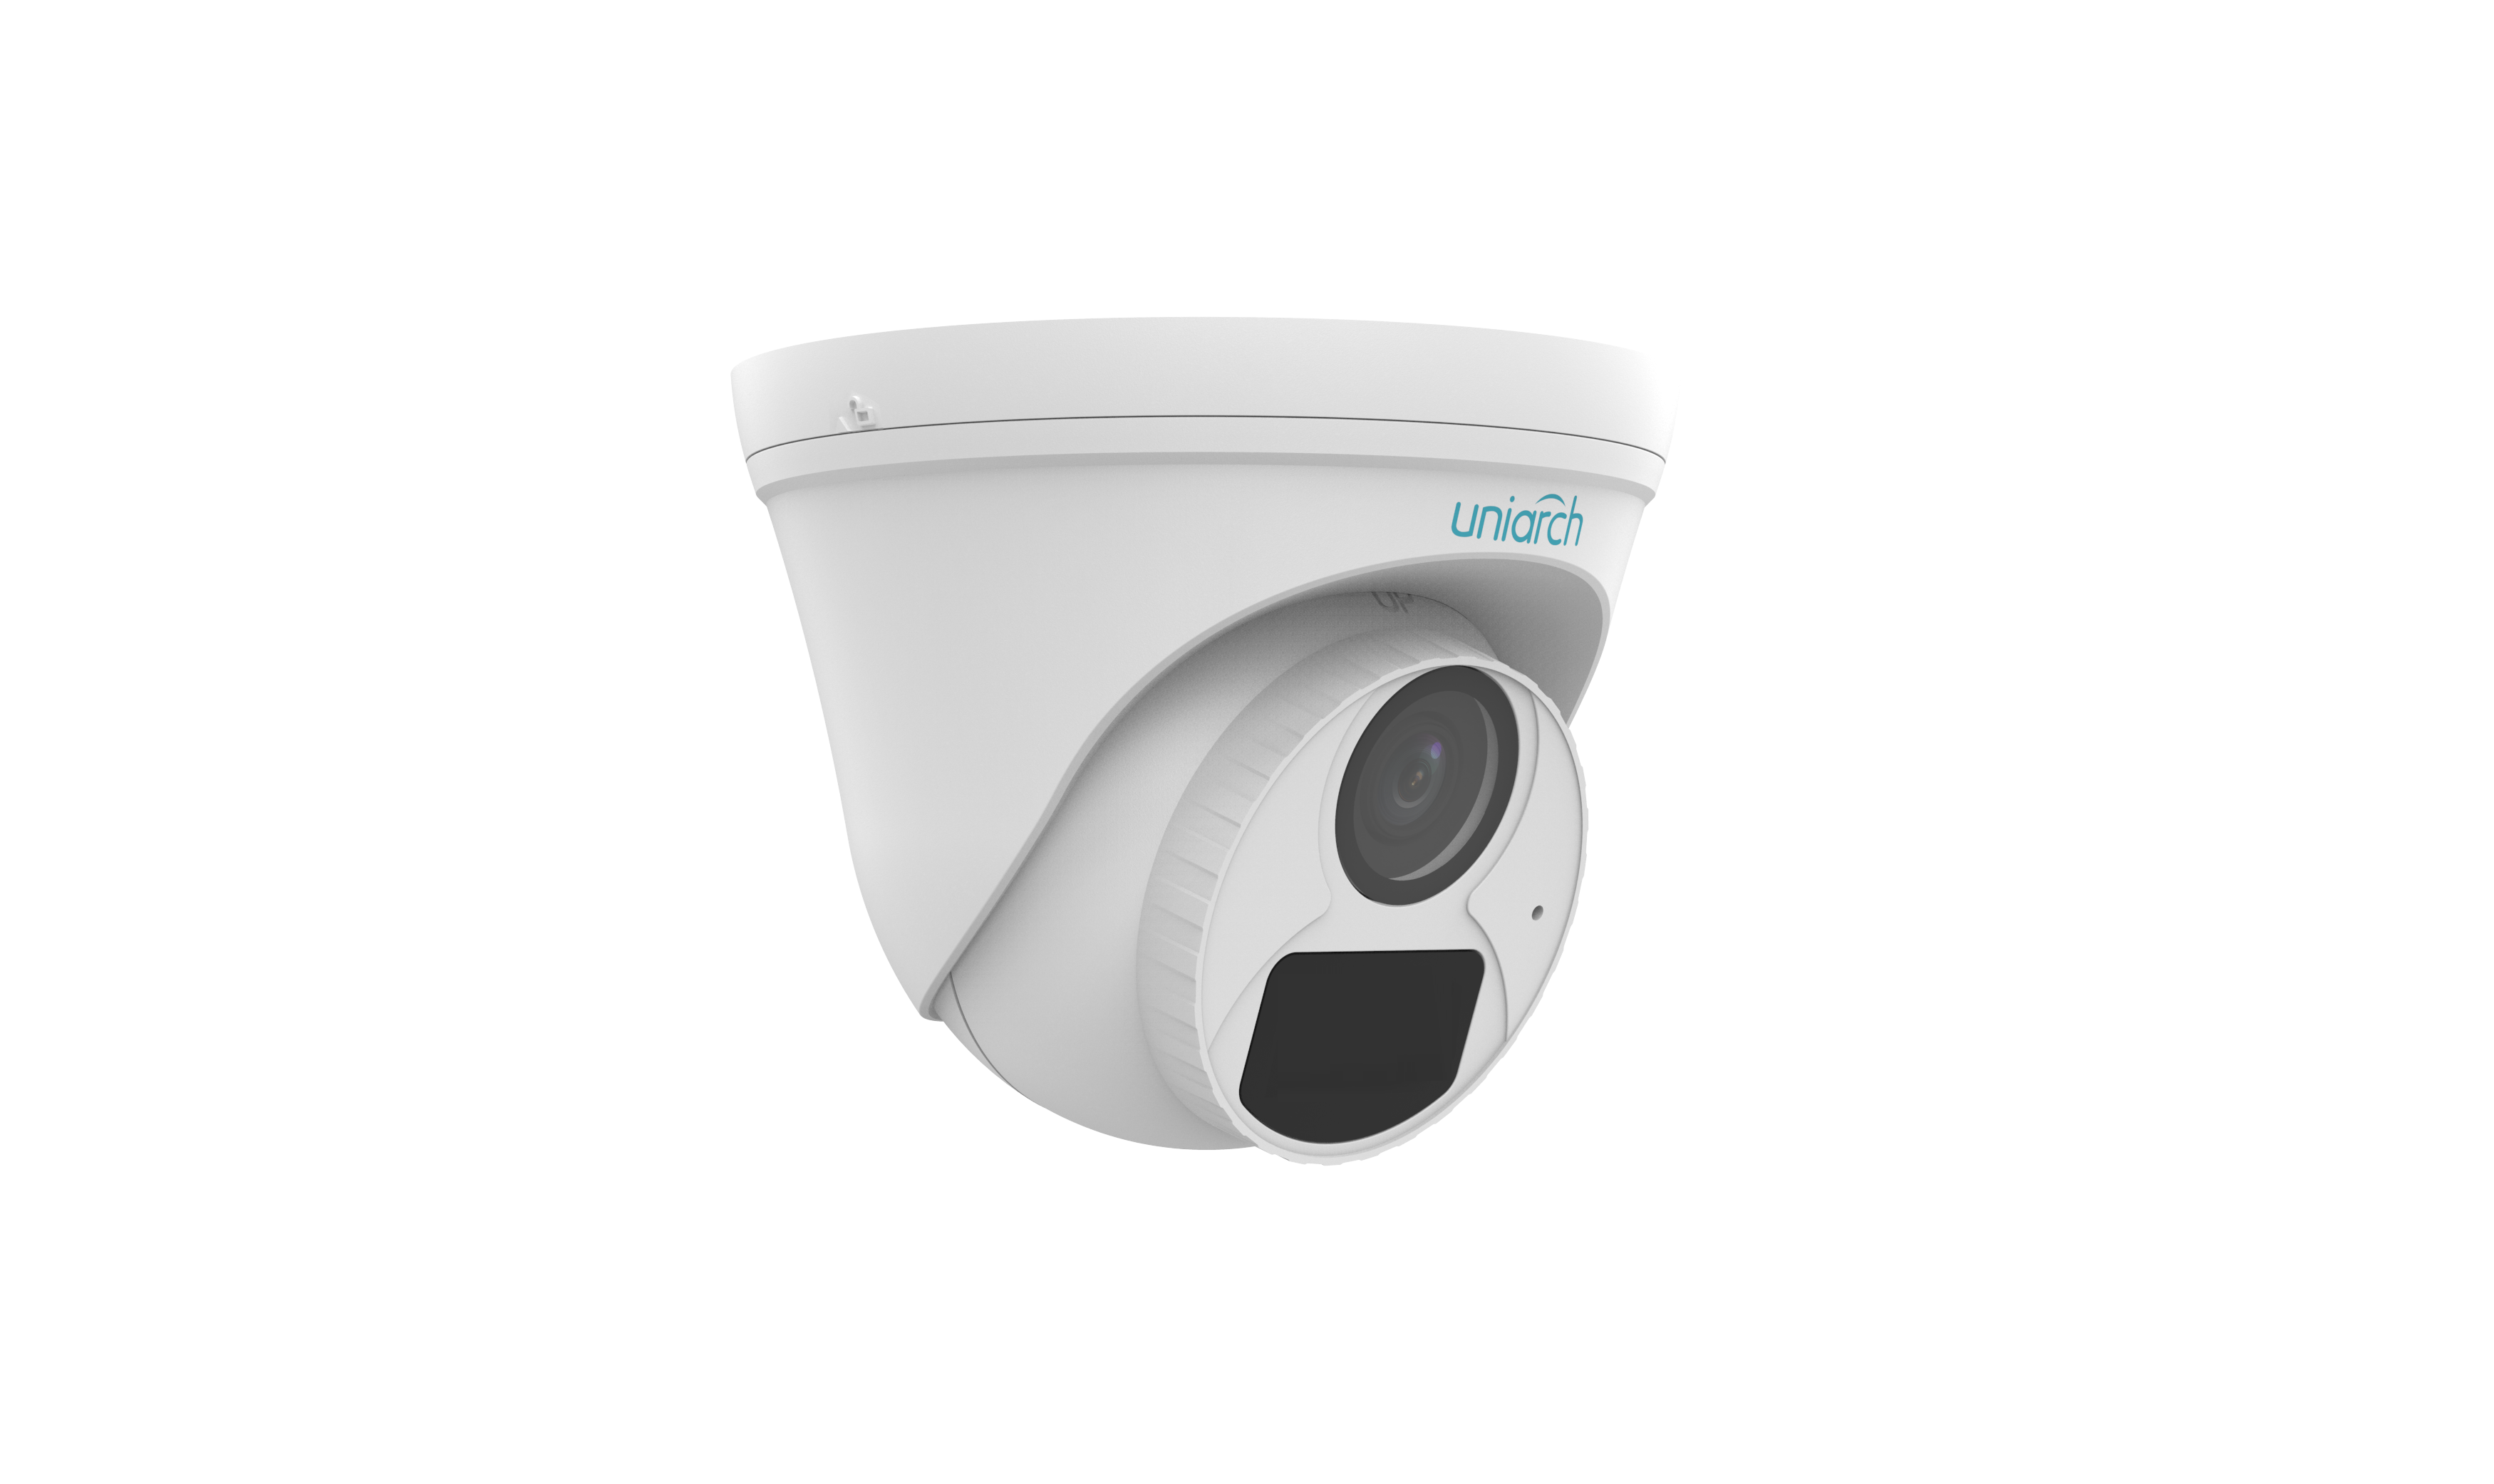 Купольная видеокамера Uniarch IPC-T124-APF28